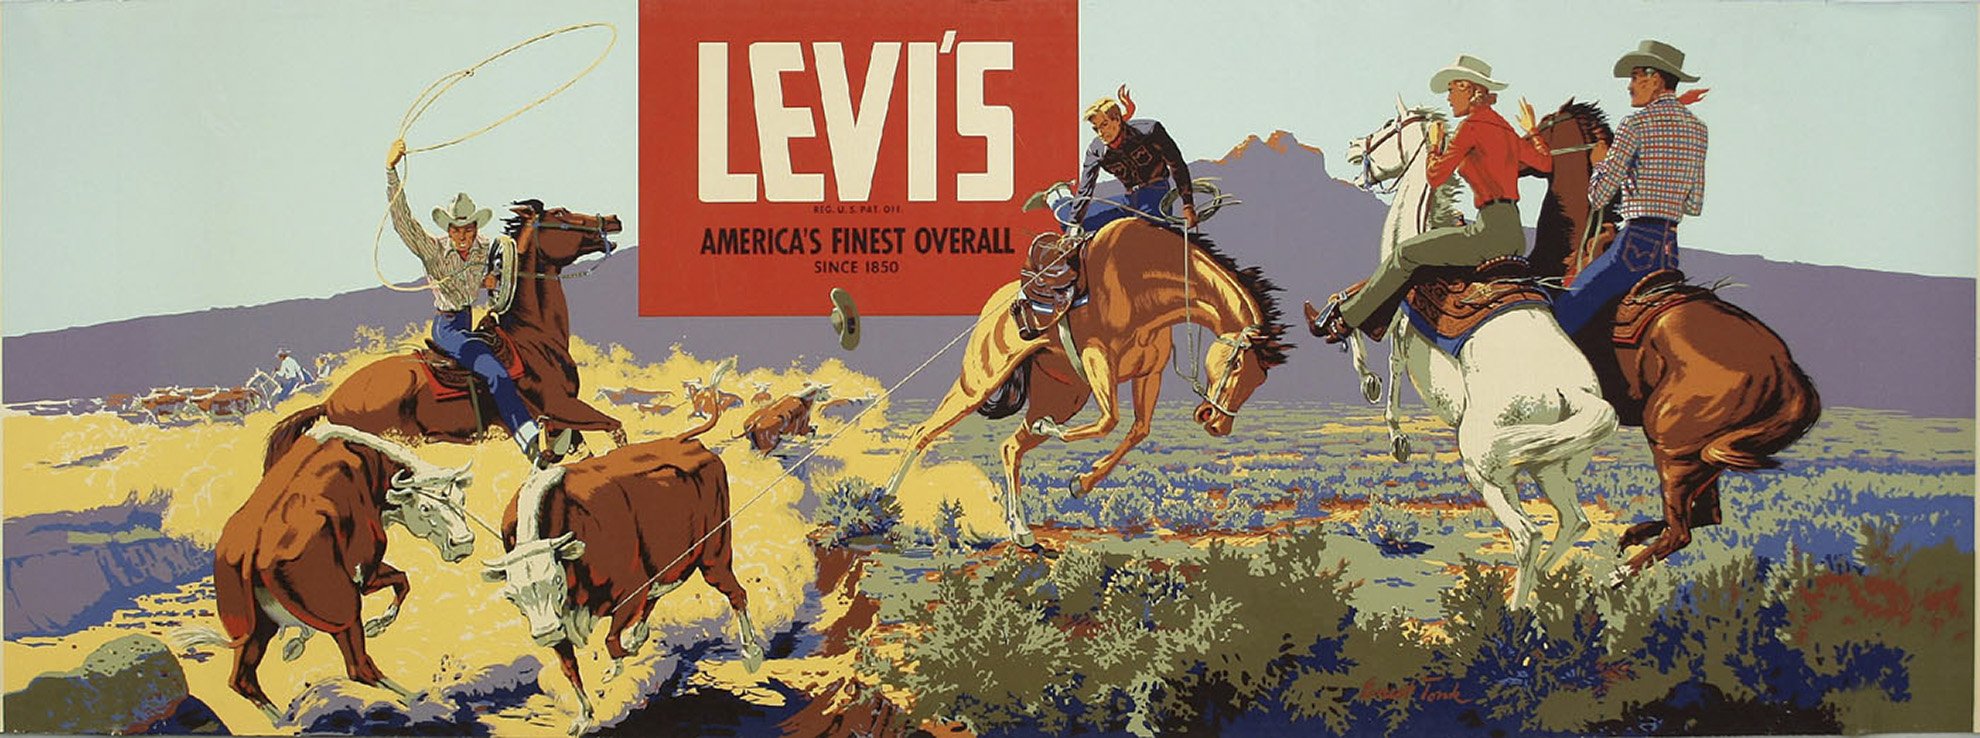 Imagen del logo de Levis en una ilustración de vaqueros.